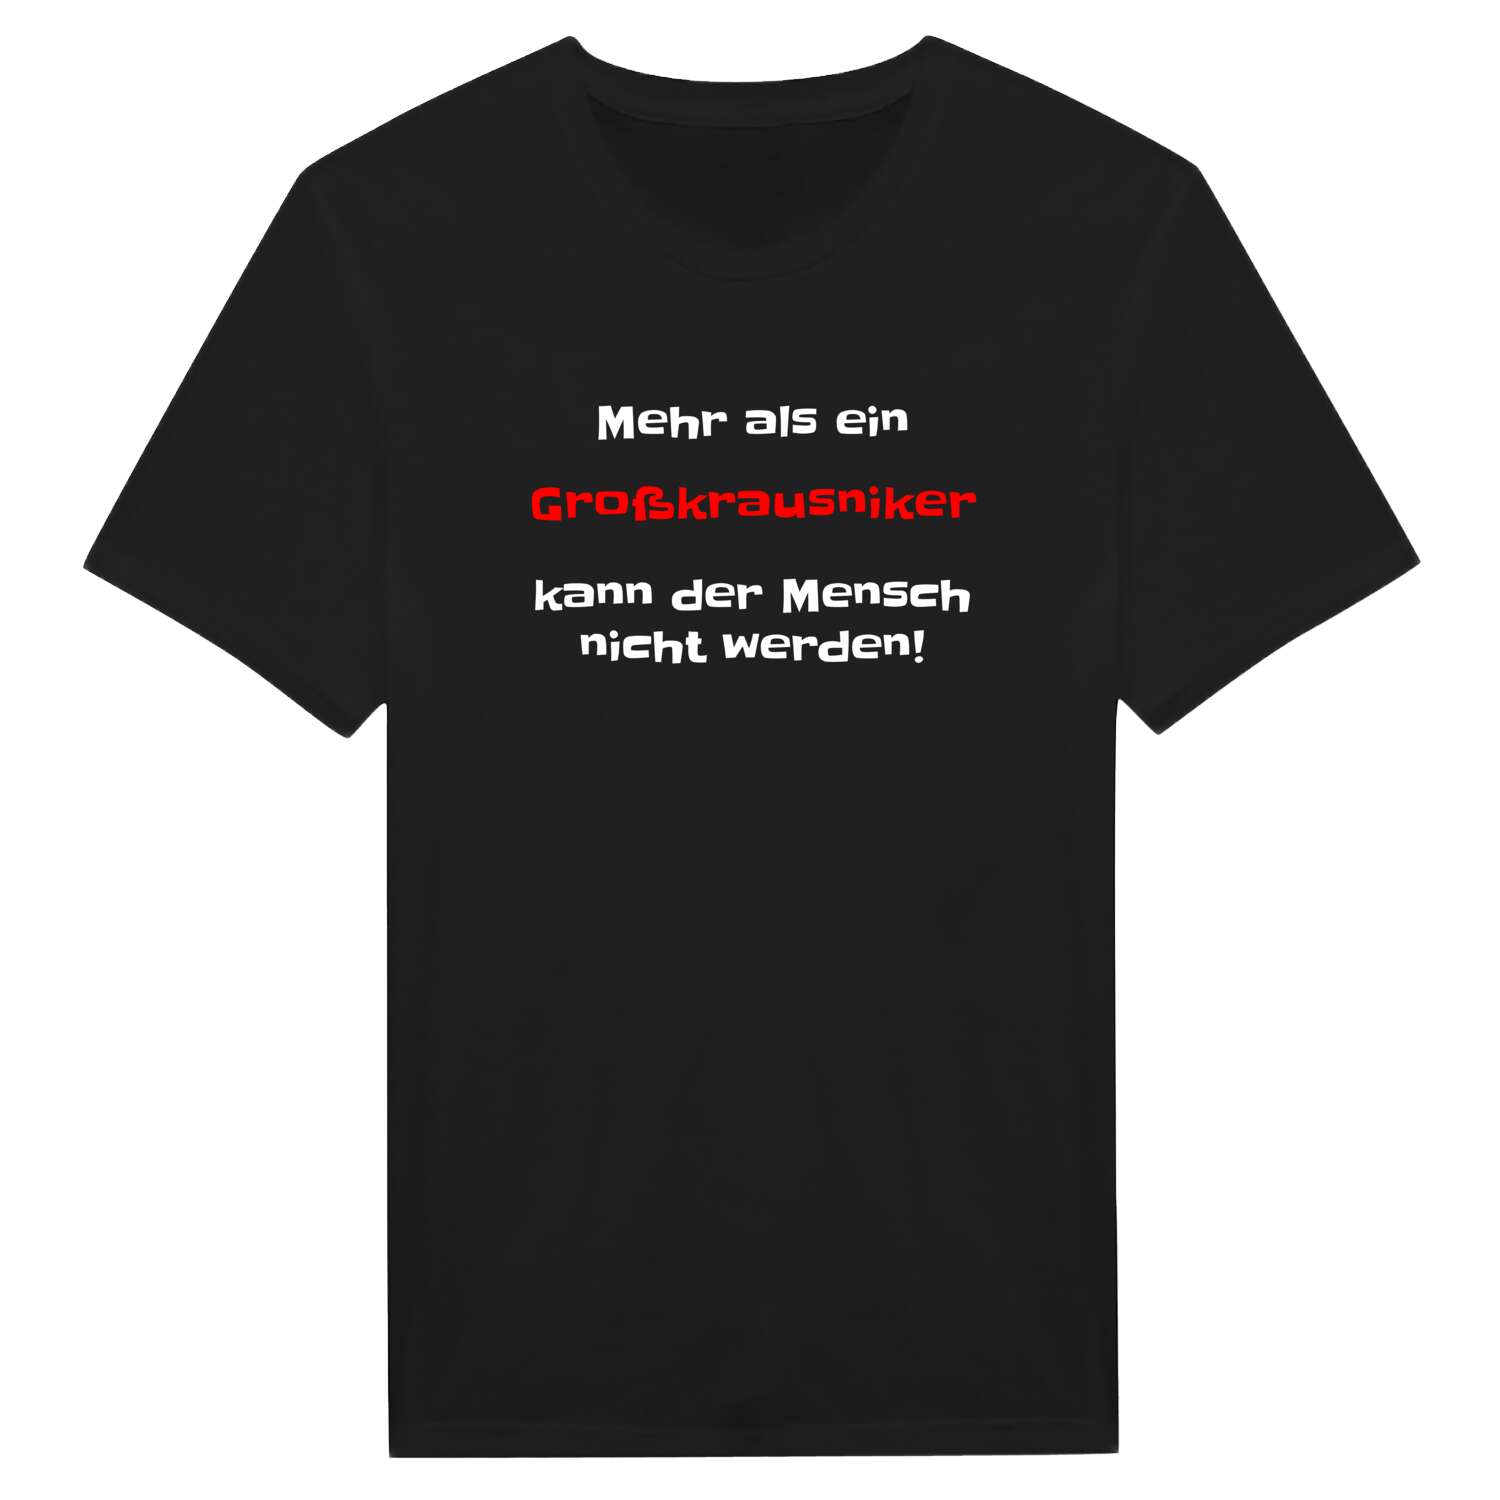 Großkrausnik T-Shirt »Mehr als ein«